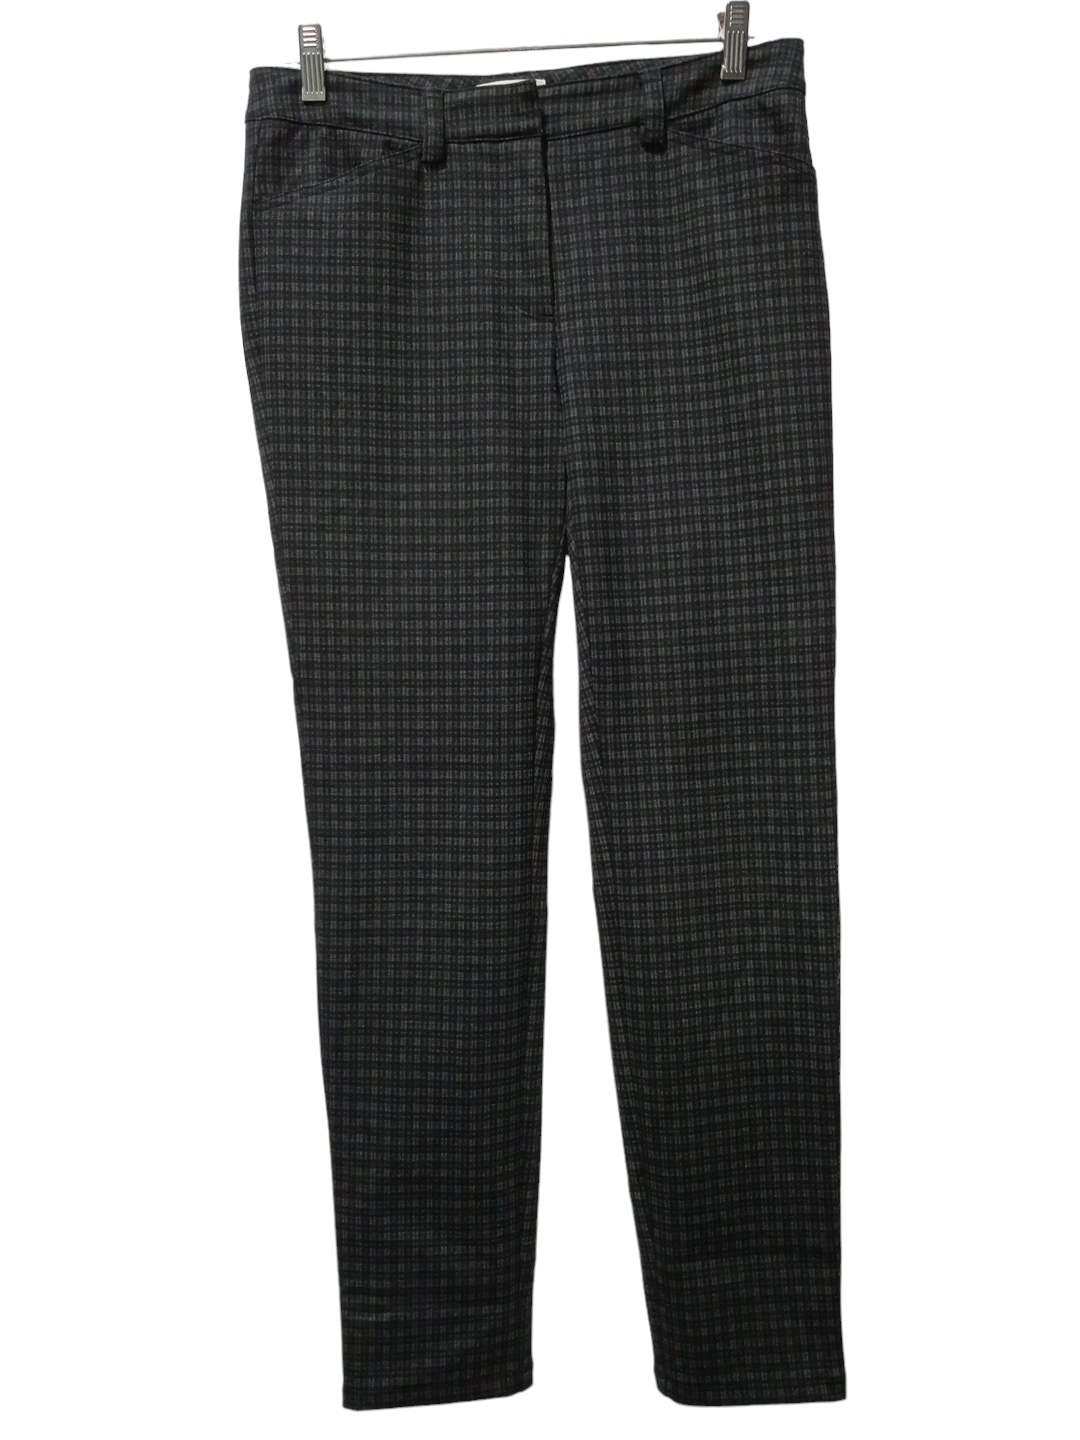 Checkered Pattern Pants Dress Calvin Klein, Size 6